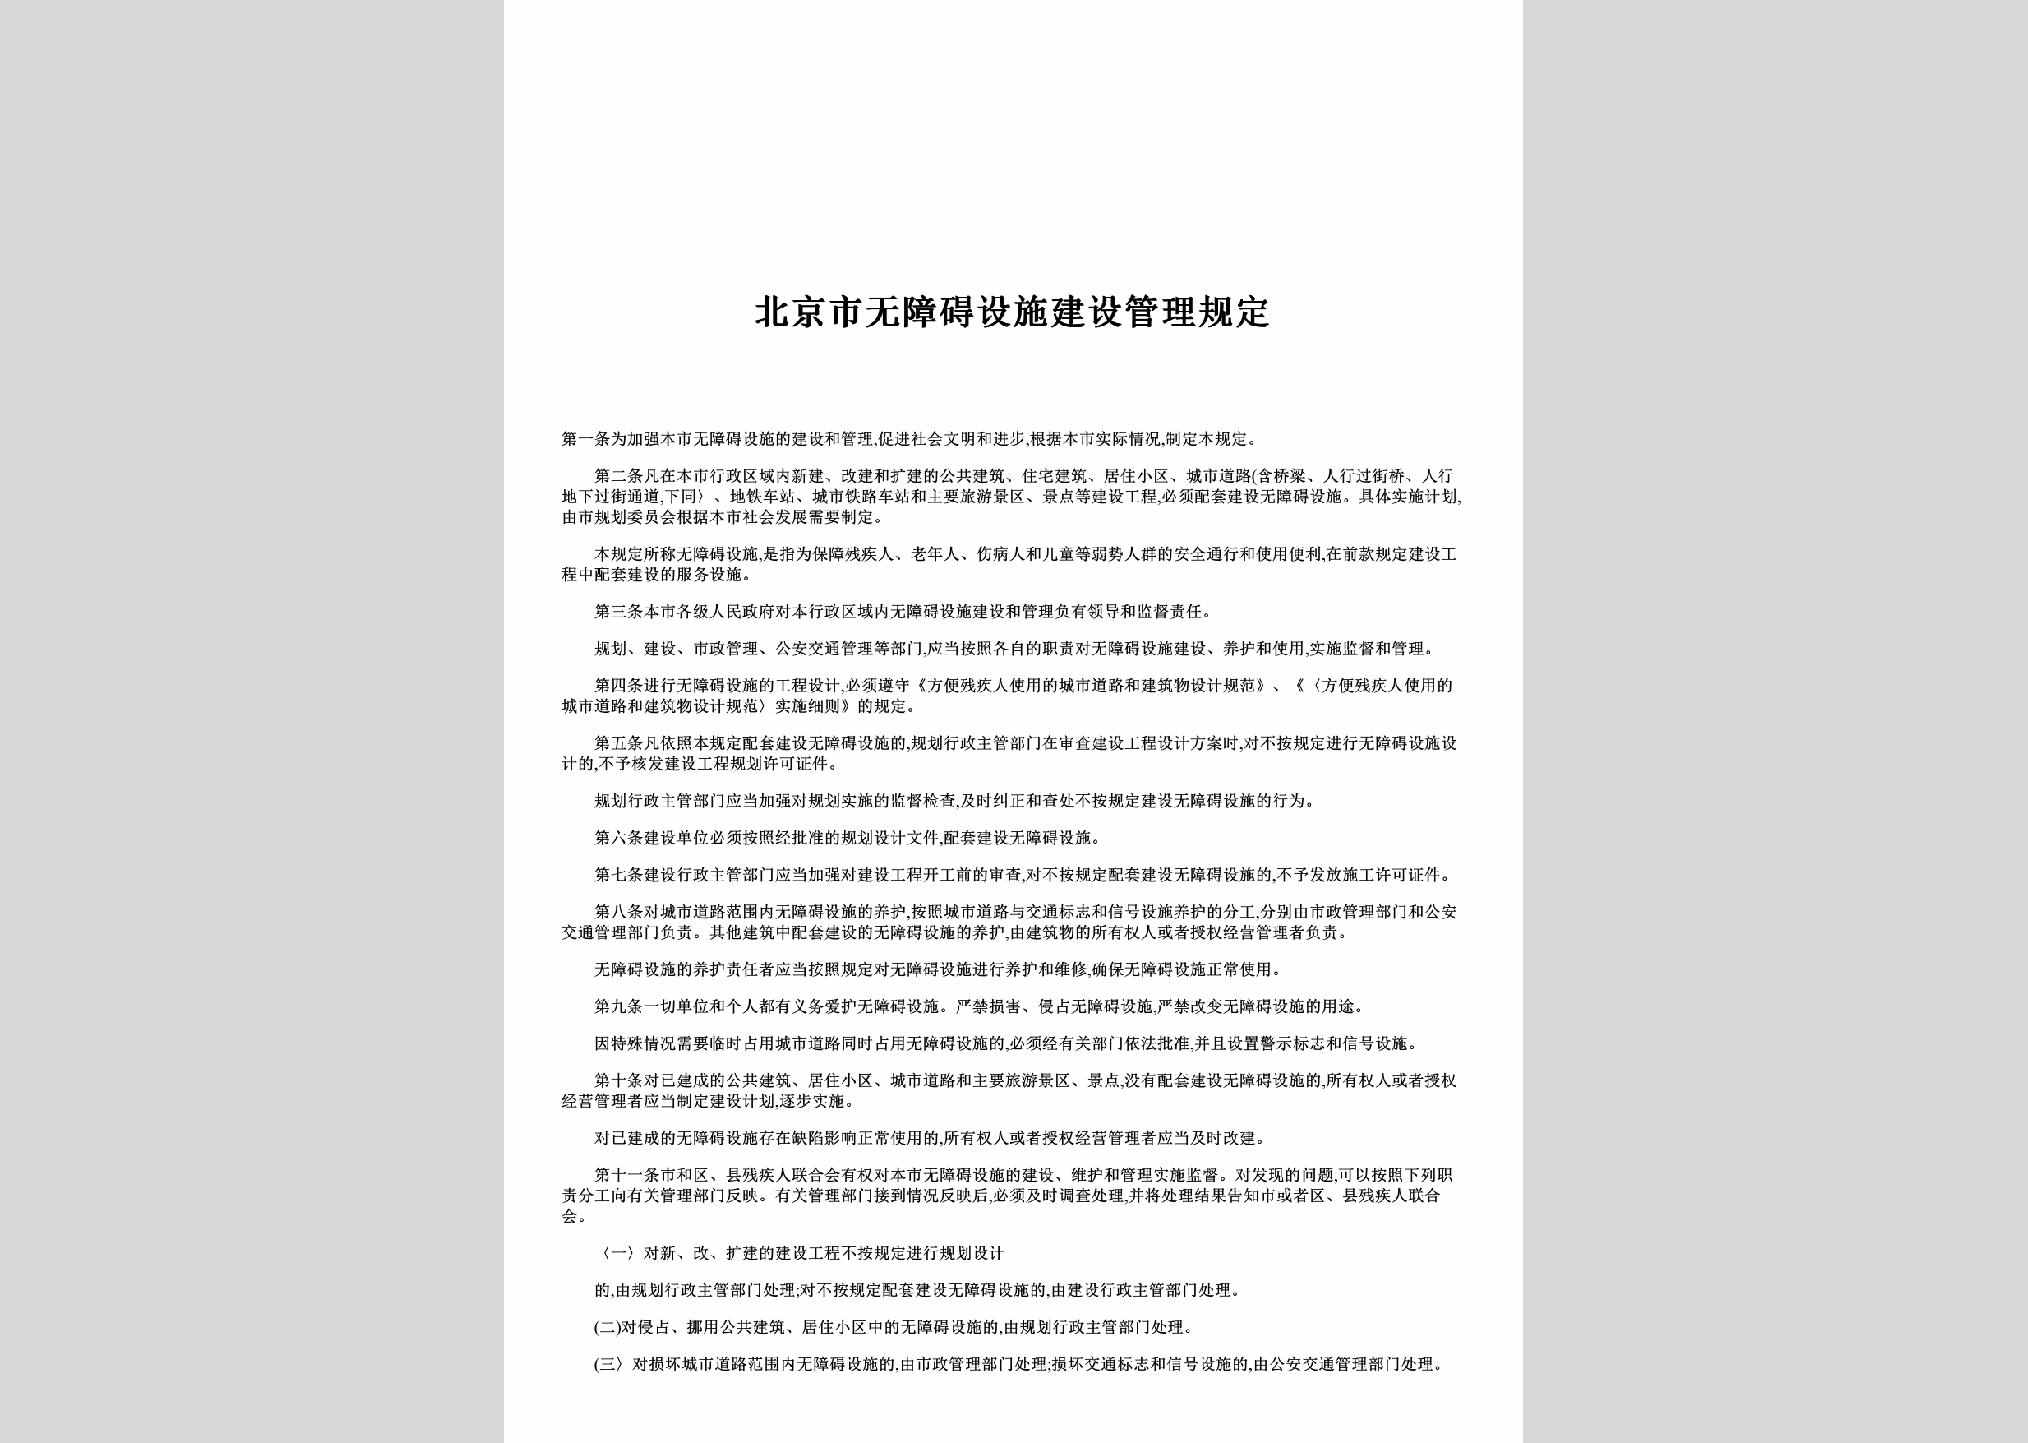 BJ-WZASSGD-2000：北京市无障碍设施建设管理规定